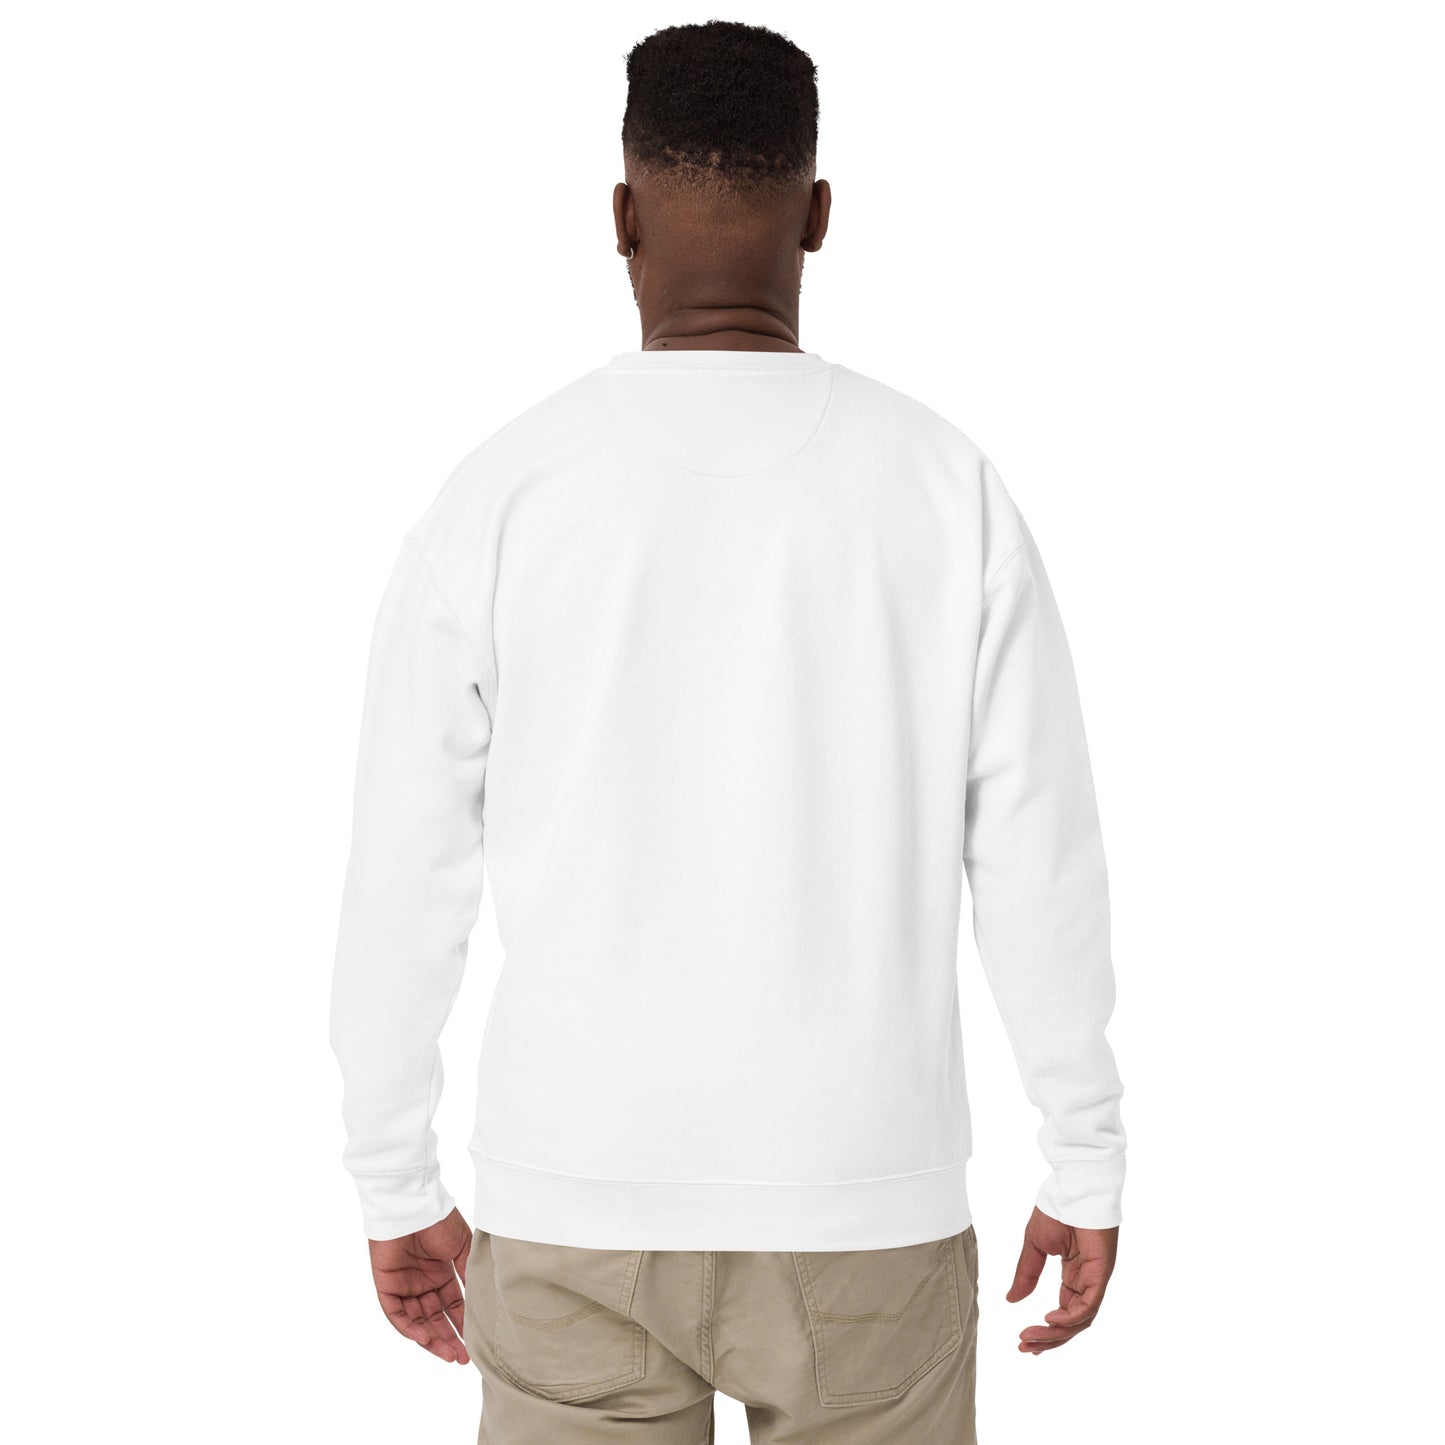 REACH HIGHER Sweatshirt